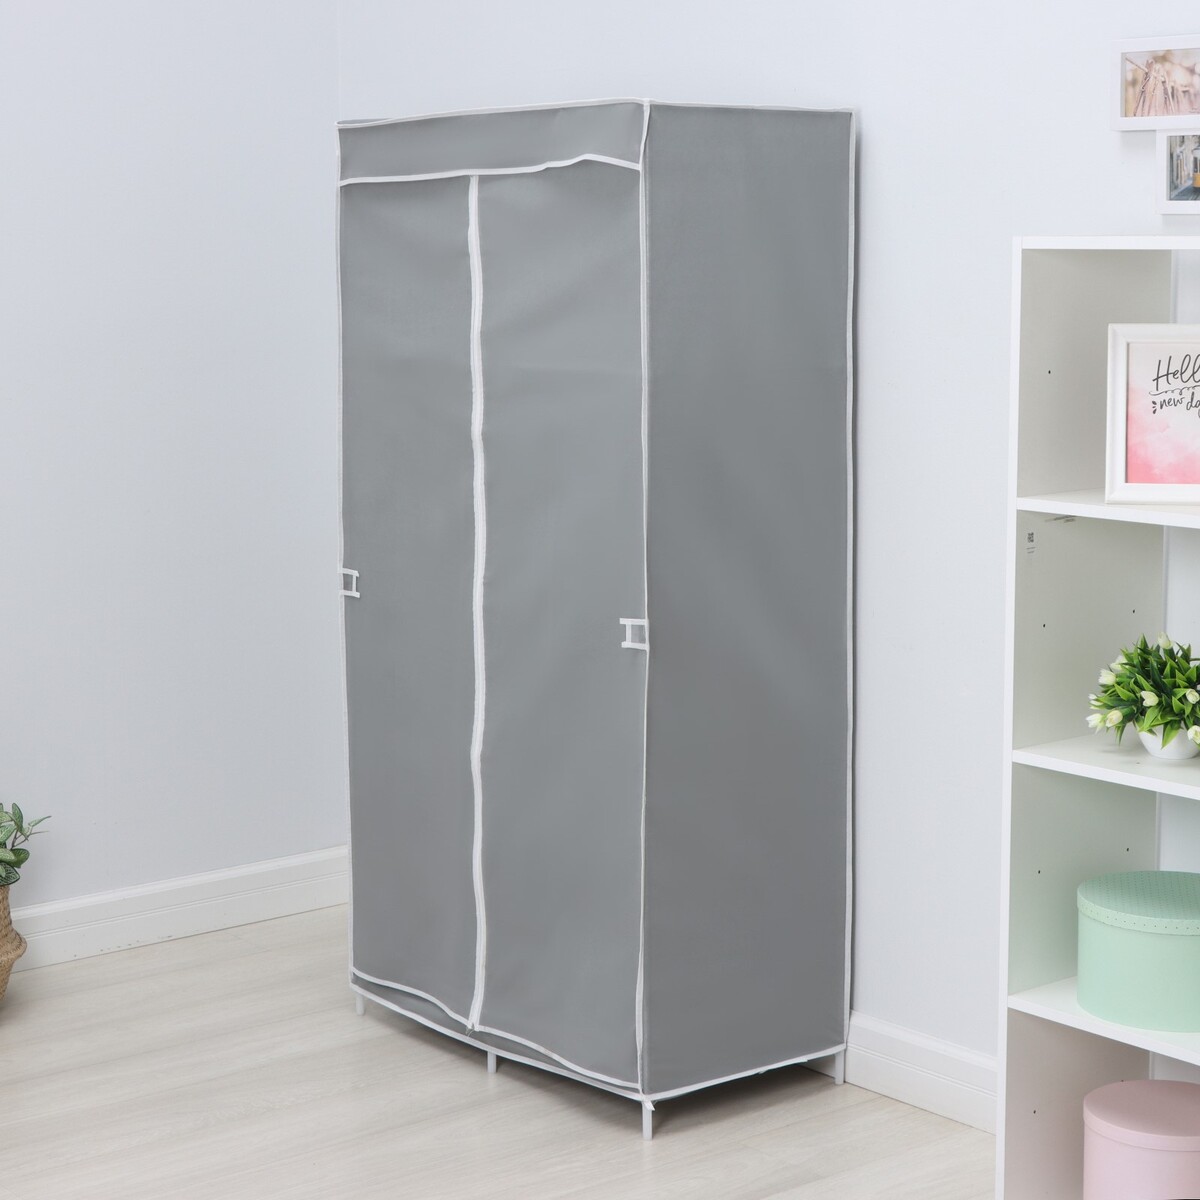 Шкаф тканевый каркасный, складной ladо́m, 83×45×160 см, цвет серый шкаф тканевый каркасный складной ladо́m 125×45×168 см серый